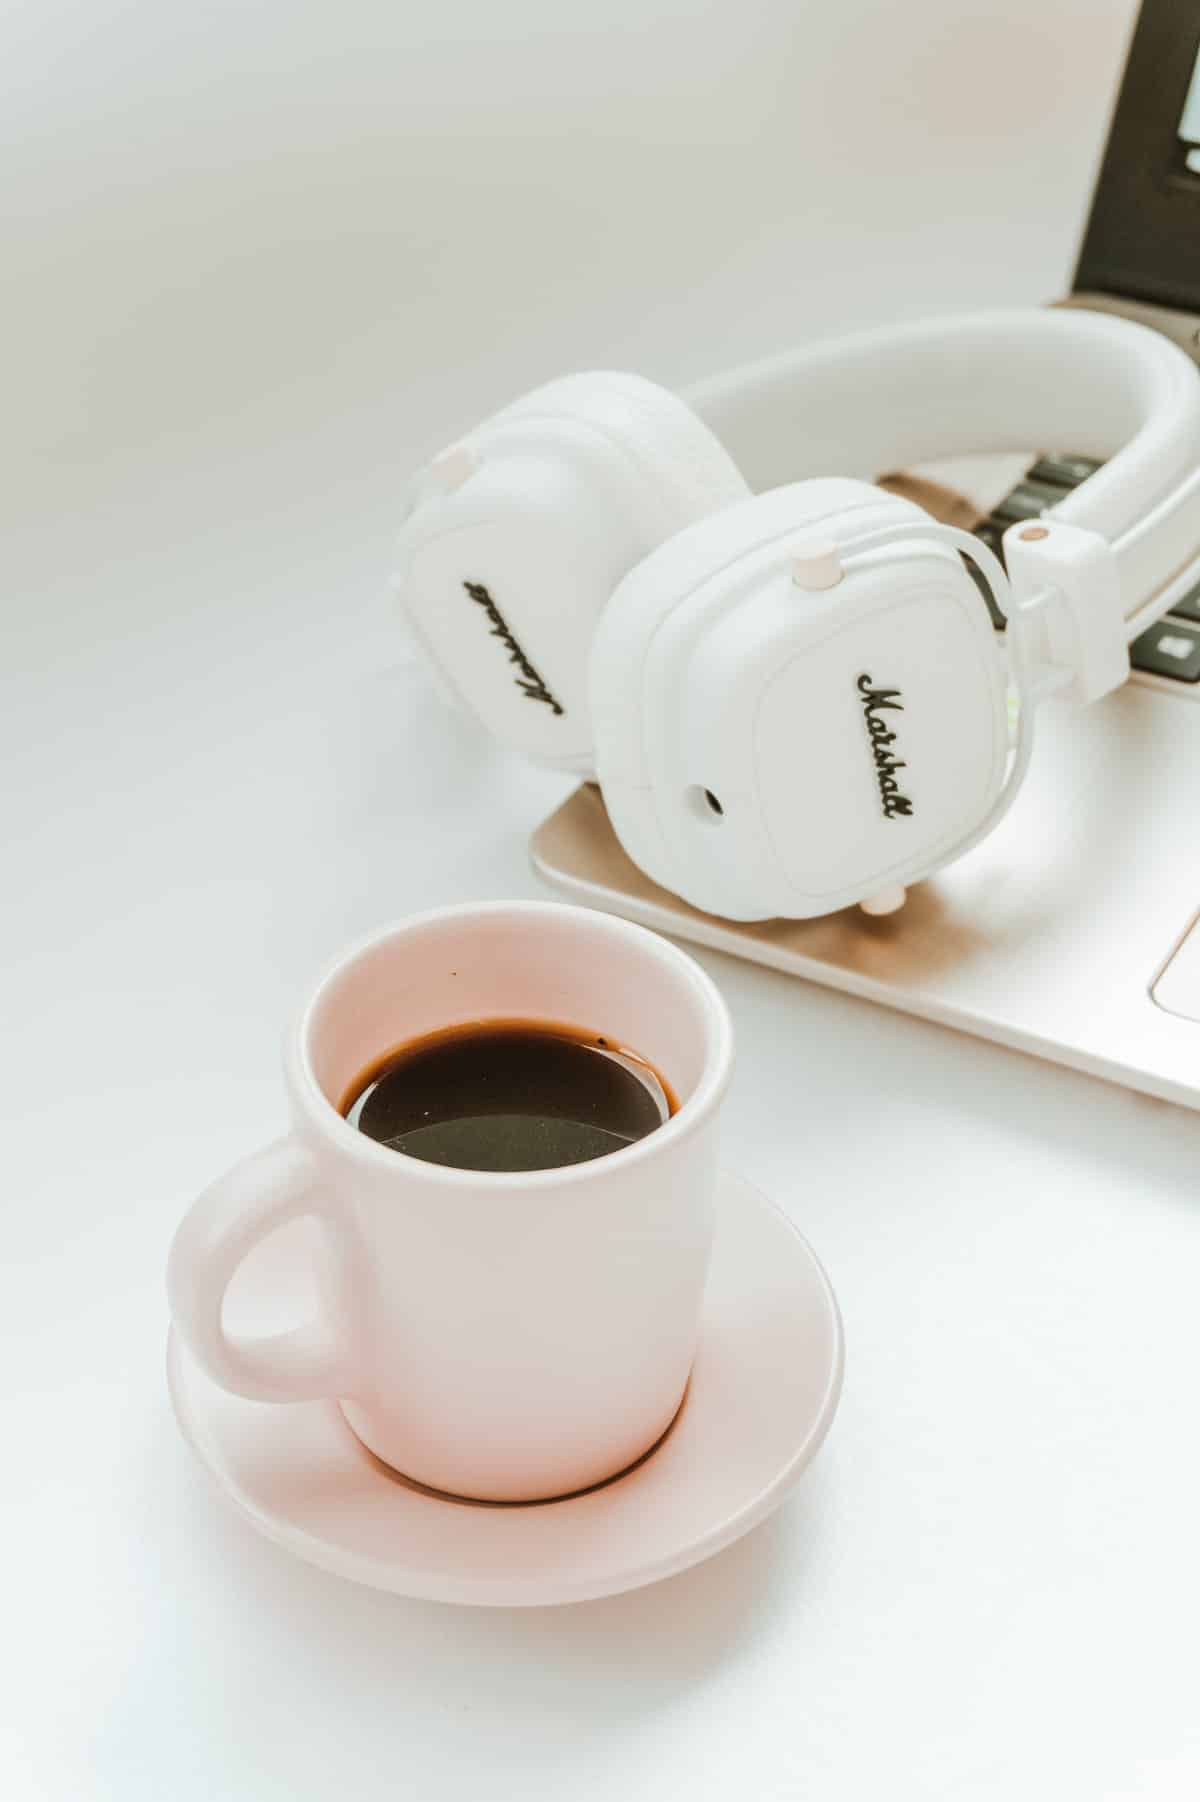 coffee, headphones, and laptop